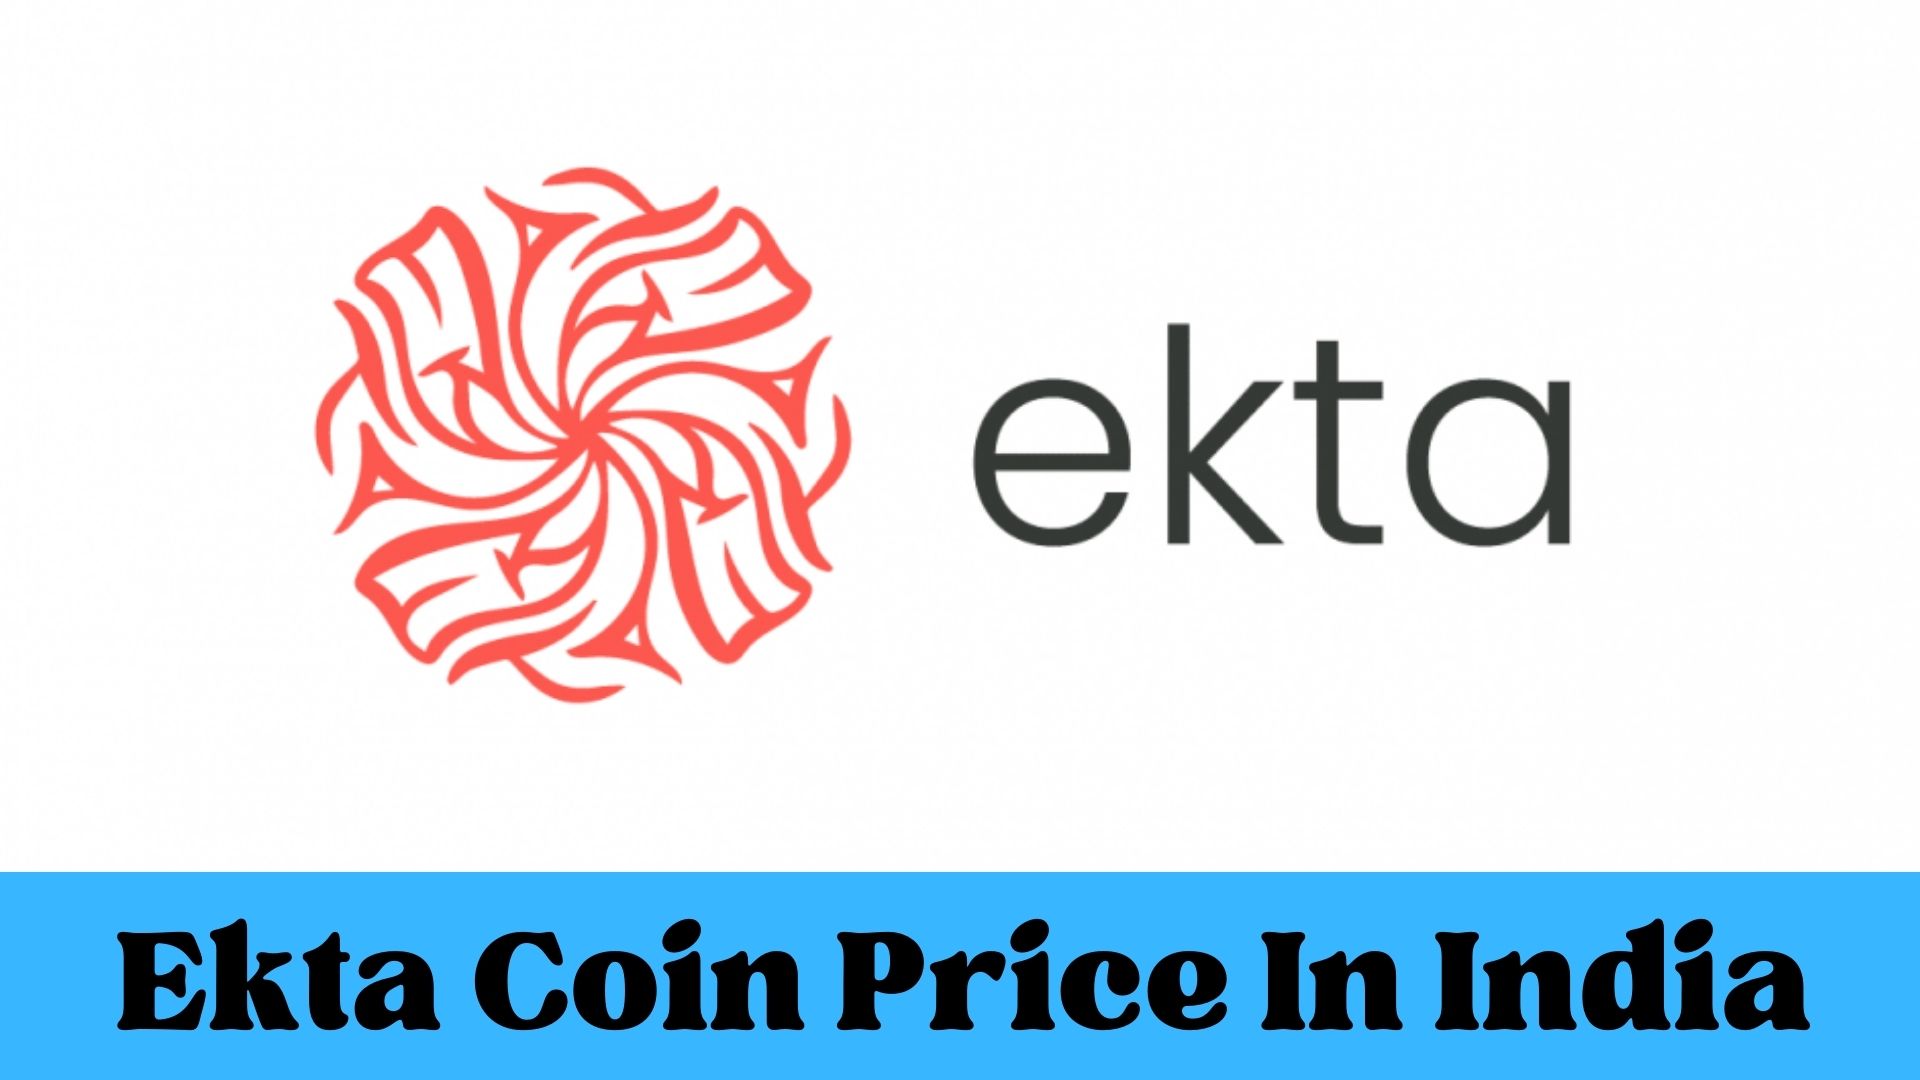 Ekta Coin Price In India